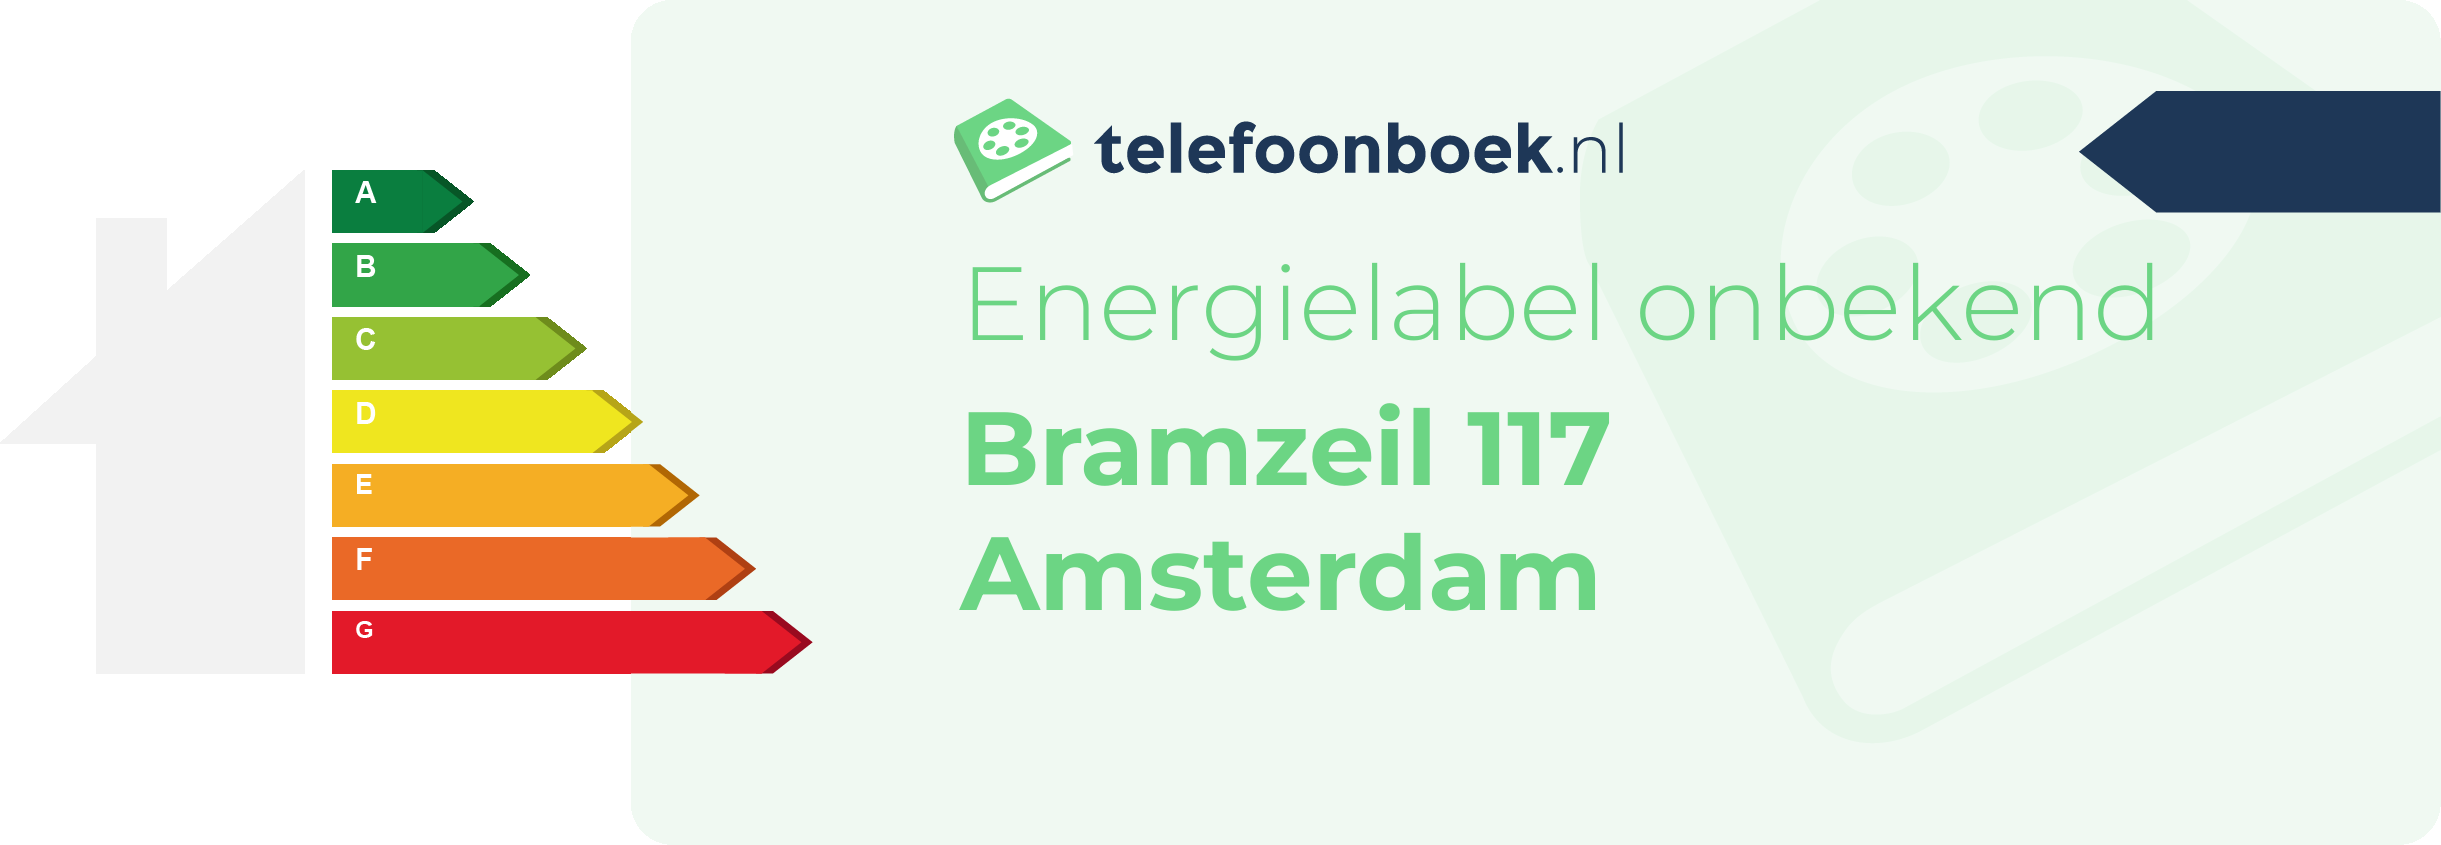 Energielabel Bramzeil 117 Amsterdam